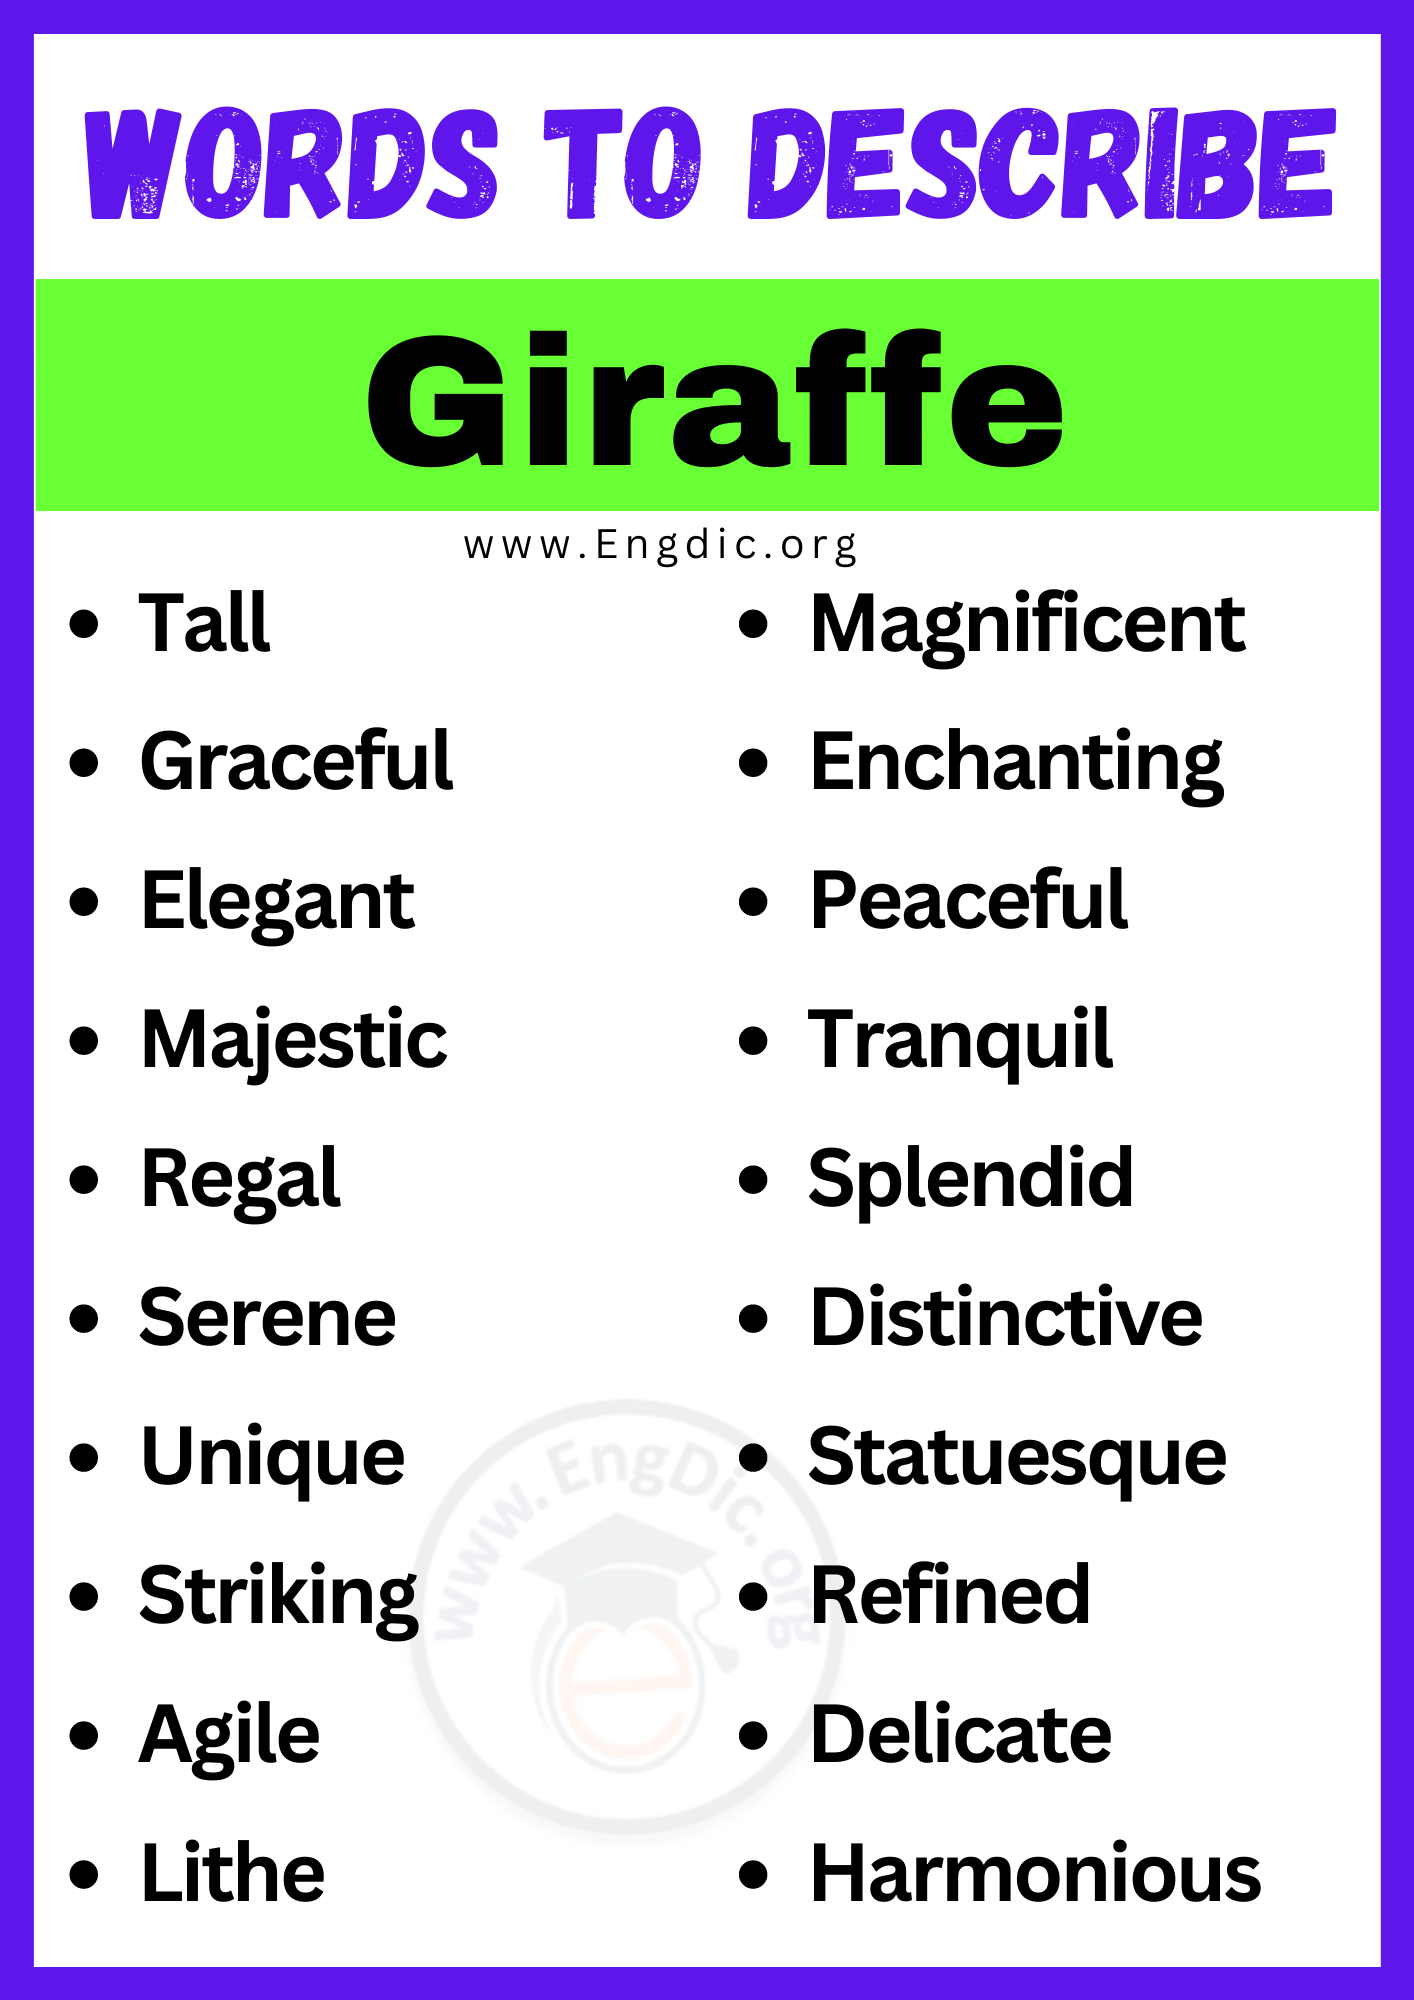 Words to Describe Giraffe